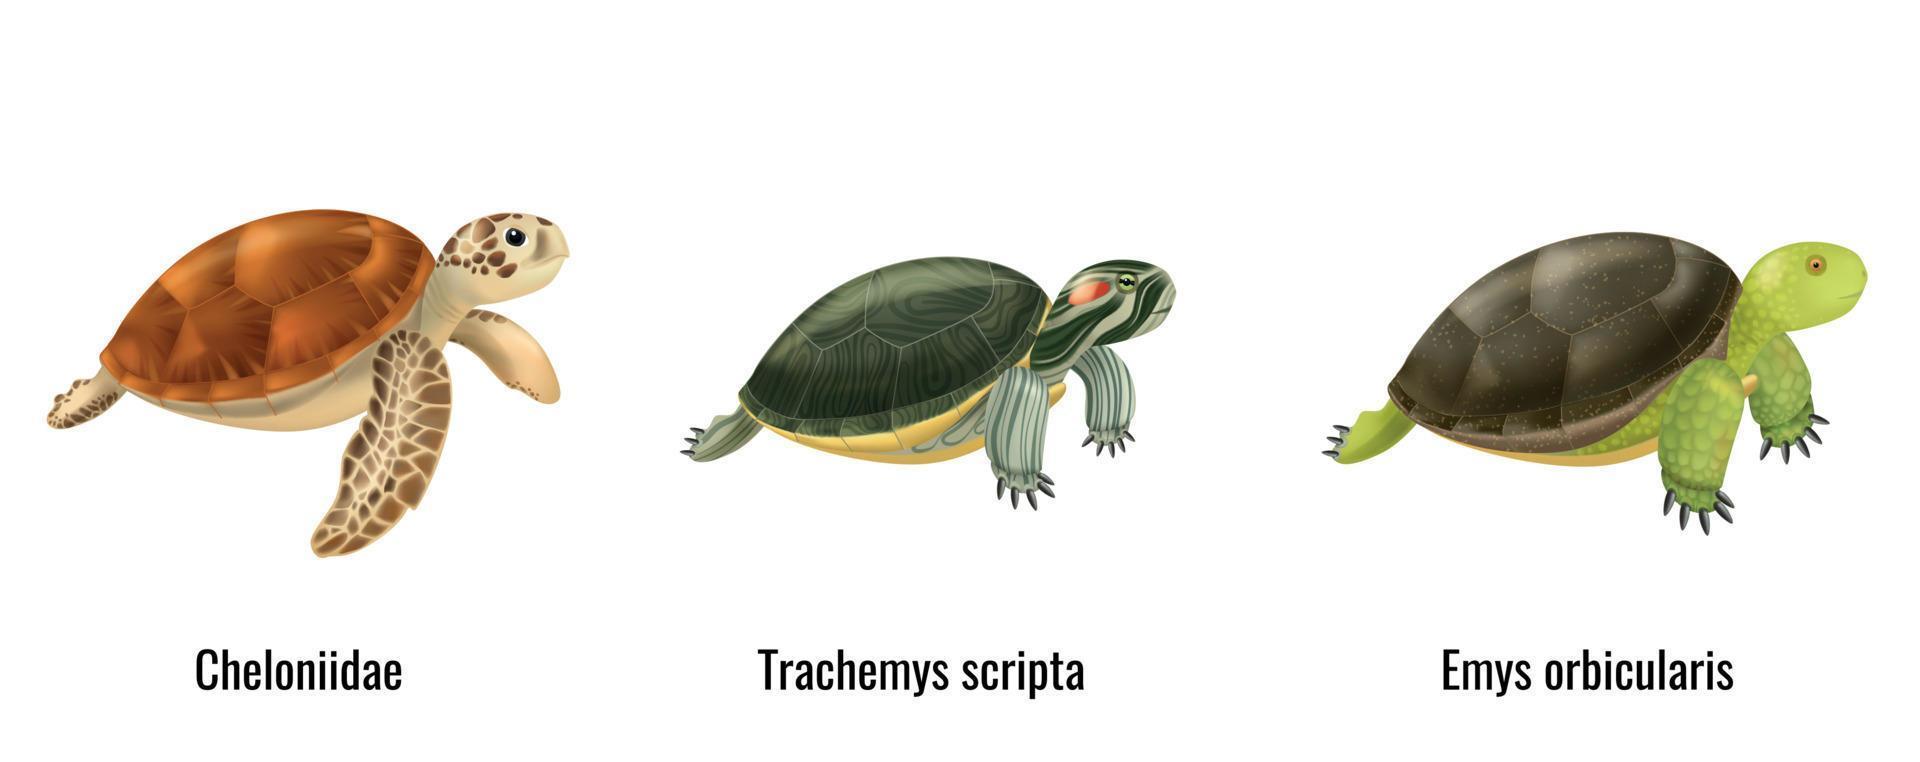 Realistic Sea Turtles vector